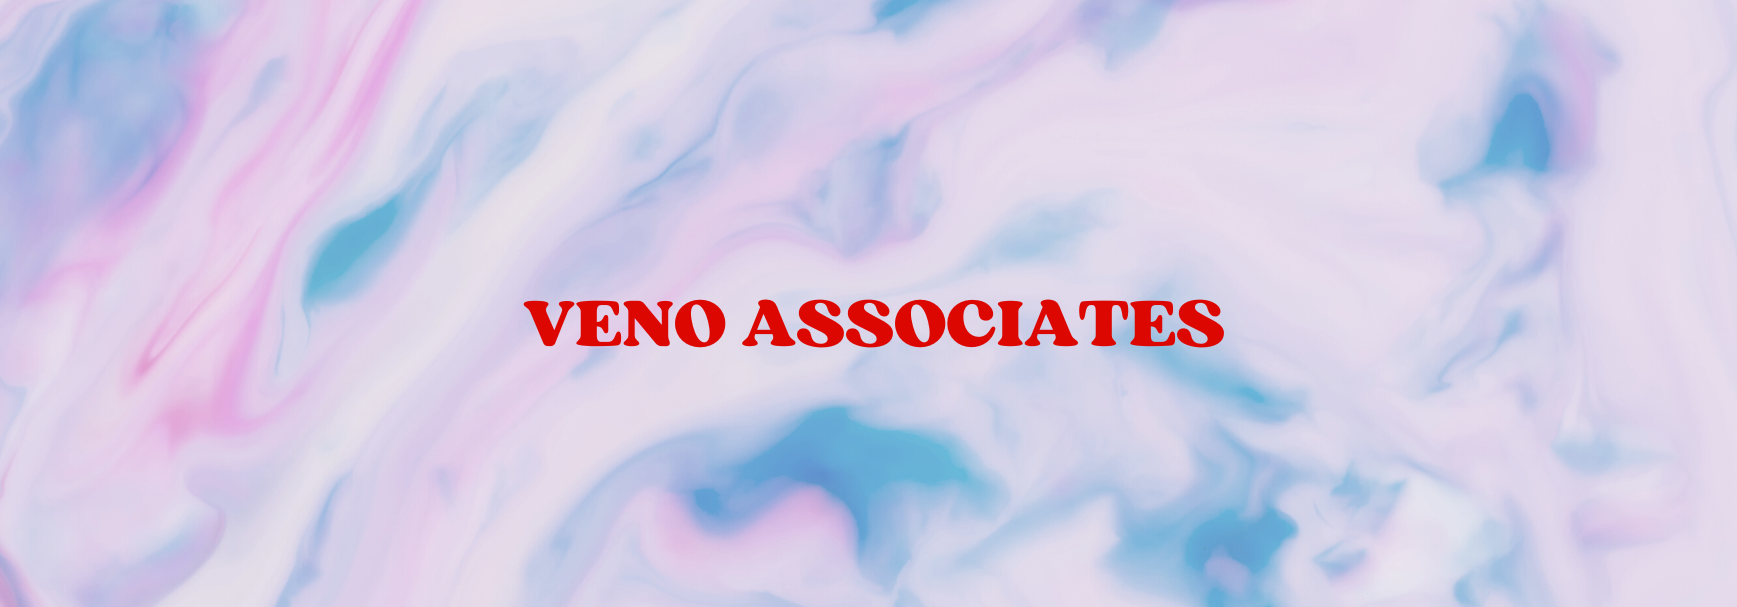 Veno Associates